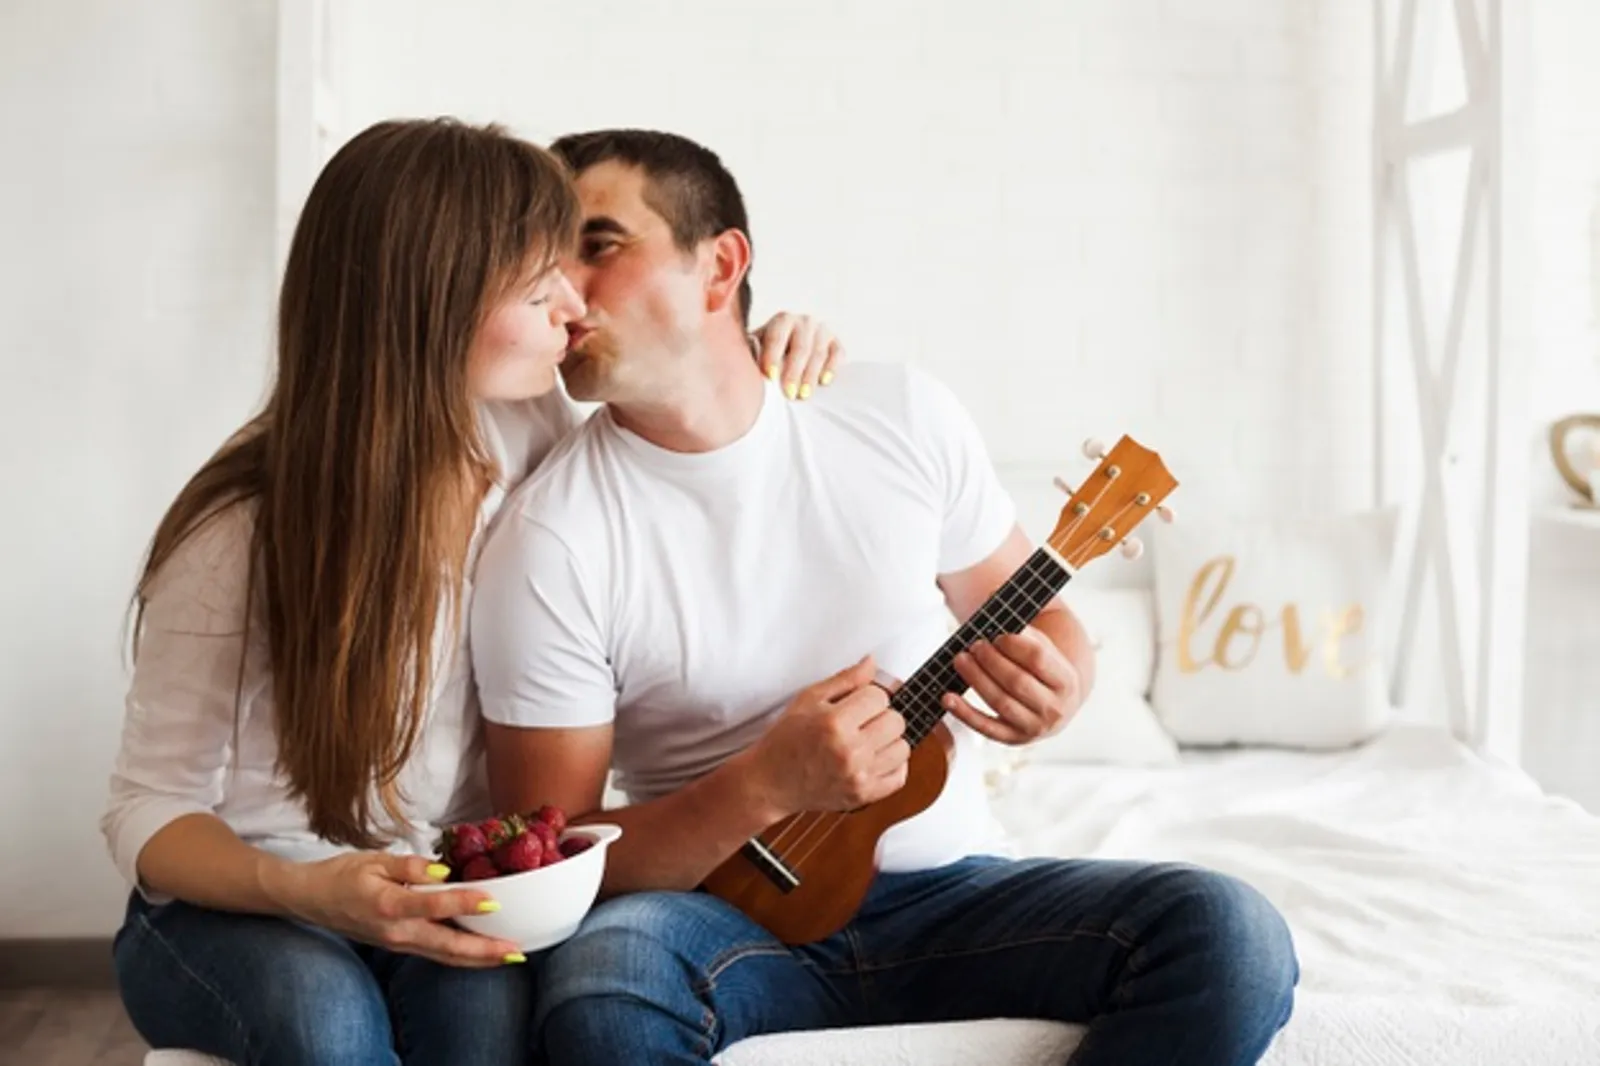 Catat! Inilah 15 Jenis Ciuman yang Paling Disukai Laki-laki